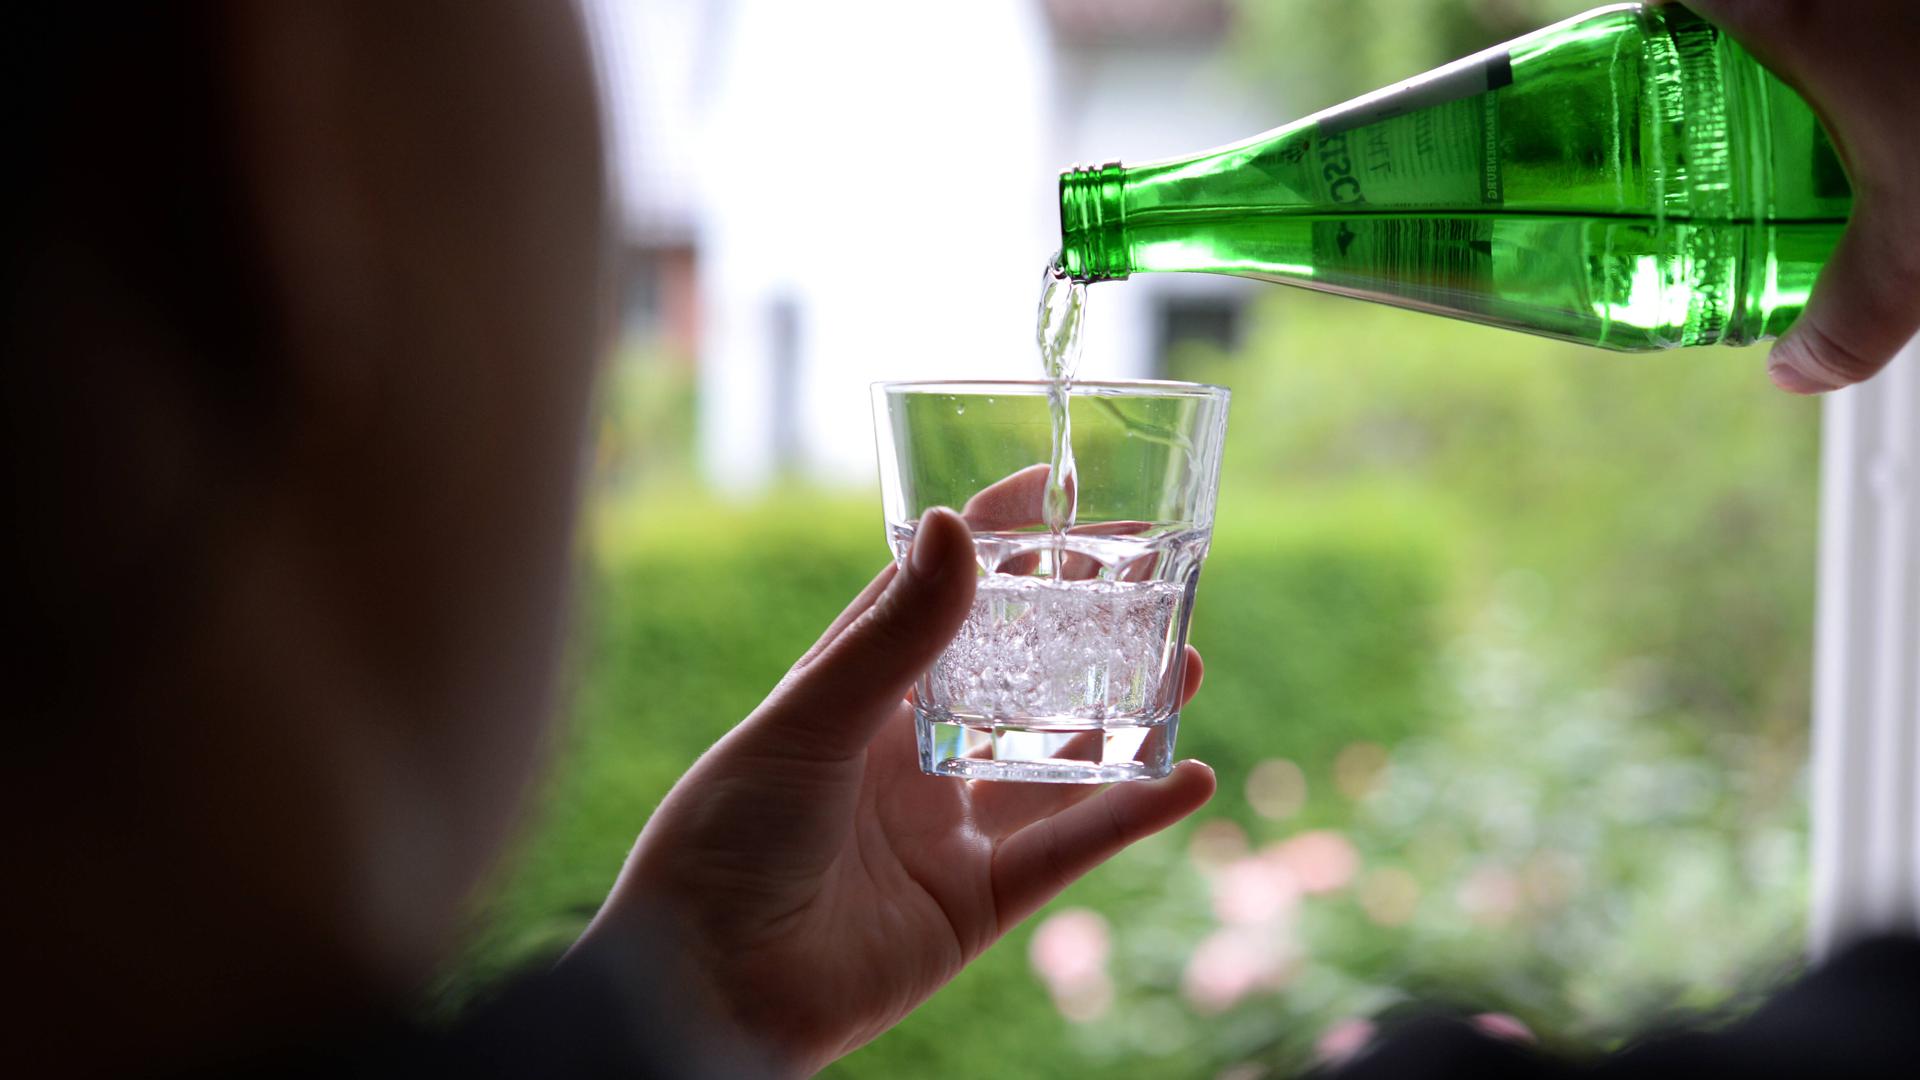 Mineralwasser als Durstlöscher: Das Bundeministerium für Ernährung empfiehlt Erwachsenen im Durchschnitt 1,5 Liter täglich zu trinken. Bei Hitze im Sommer kann sogar noch mehr Flüssigkeit benötigt werden.